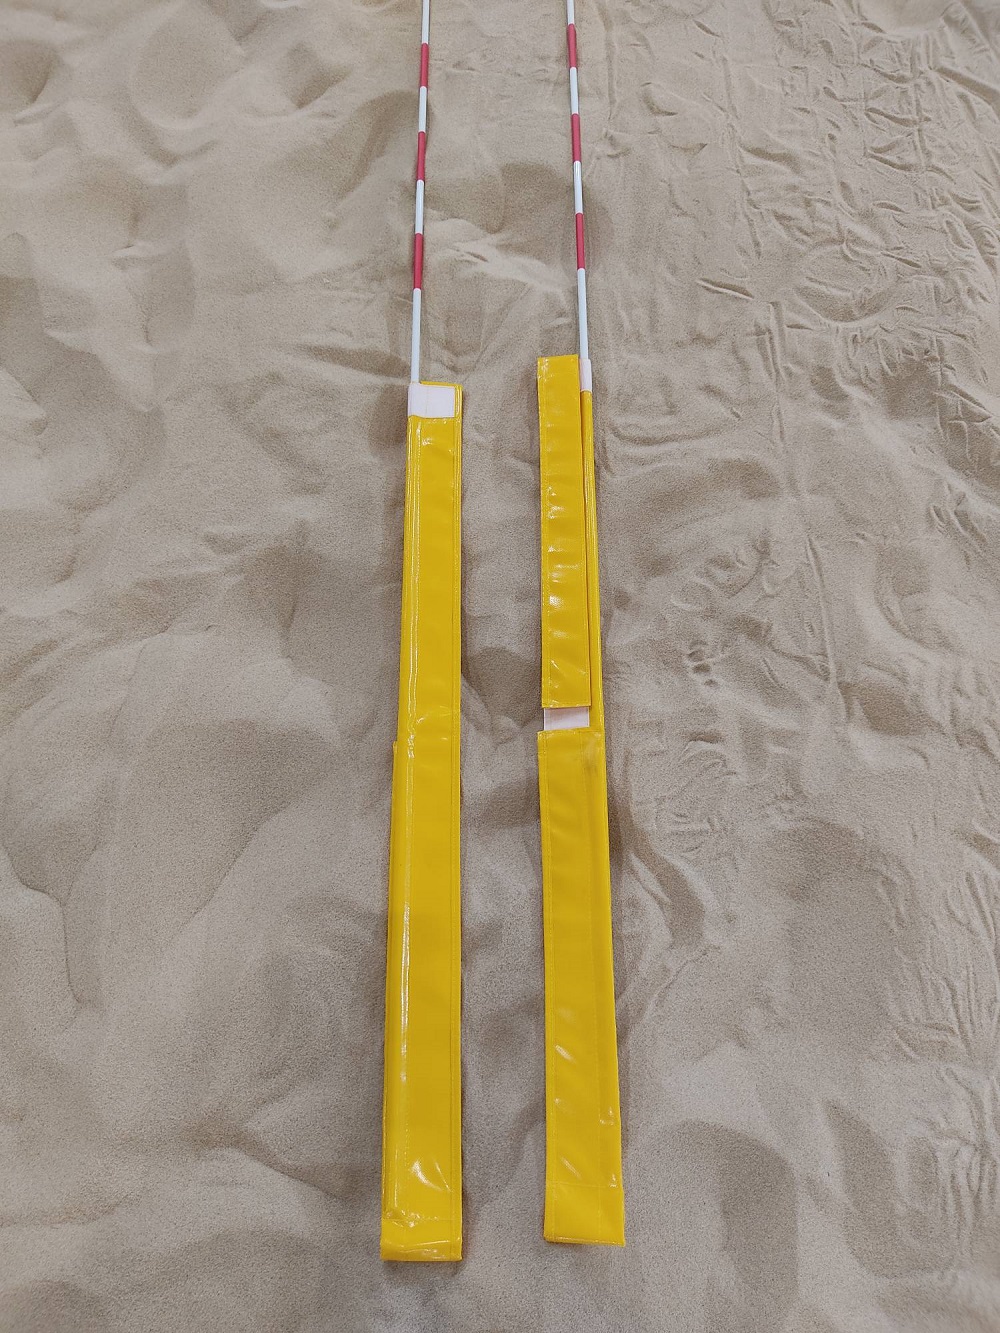 Карманы для волейбольных антенн из тента (желтые) 18033